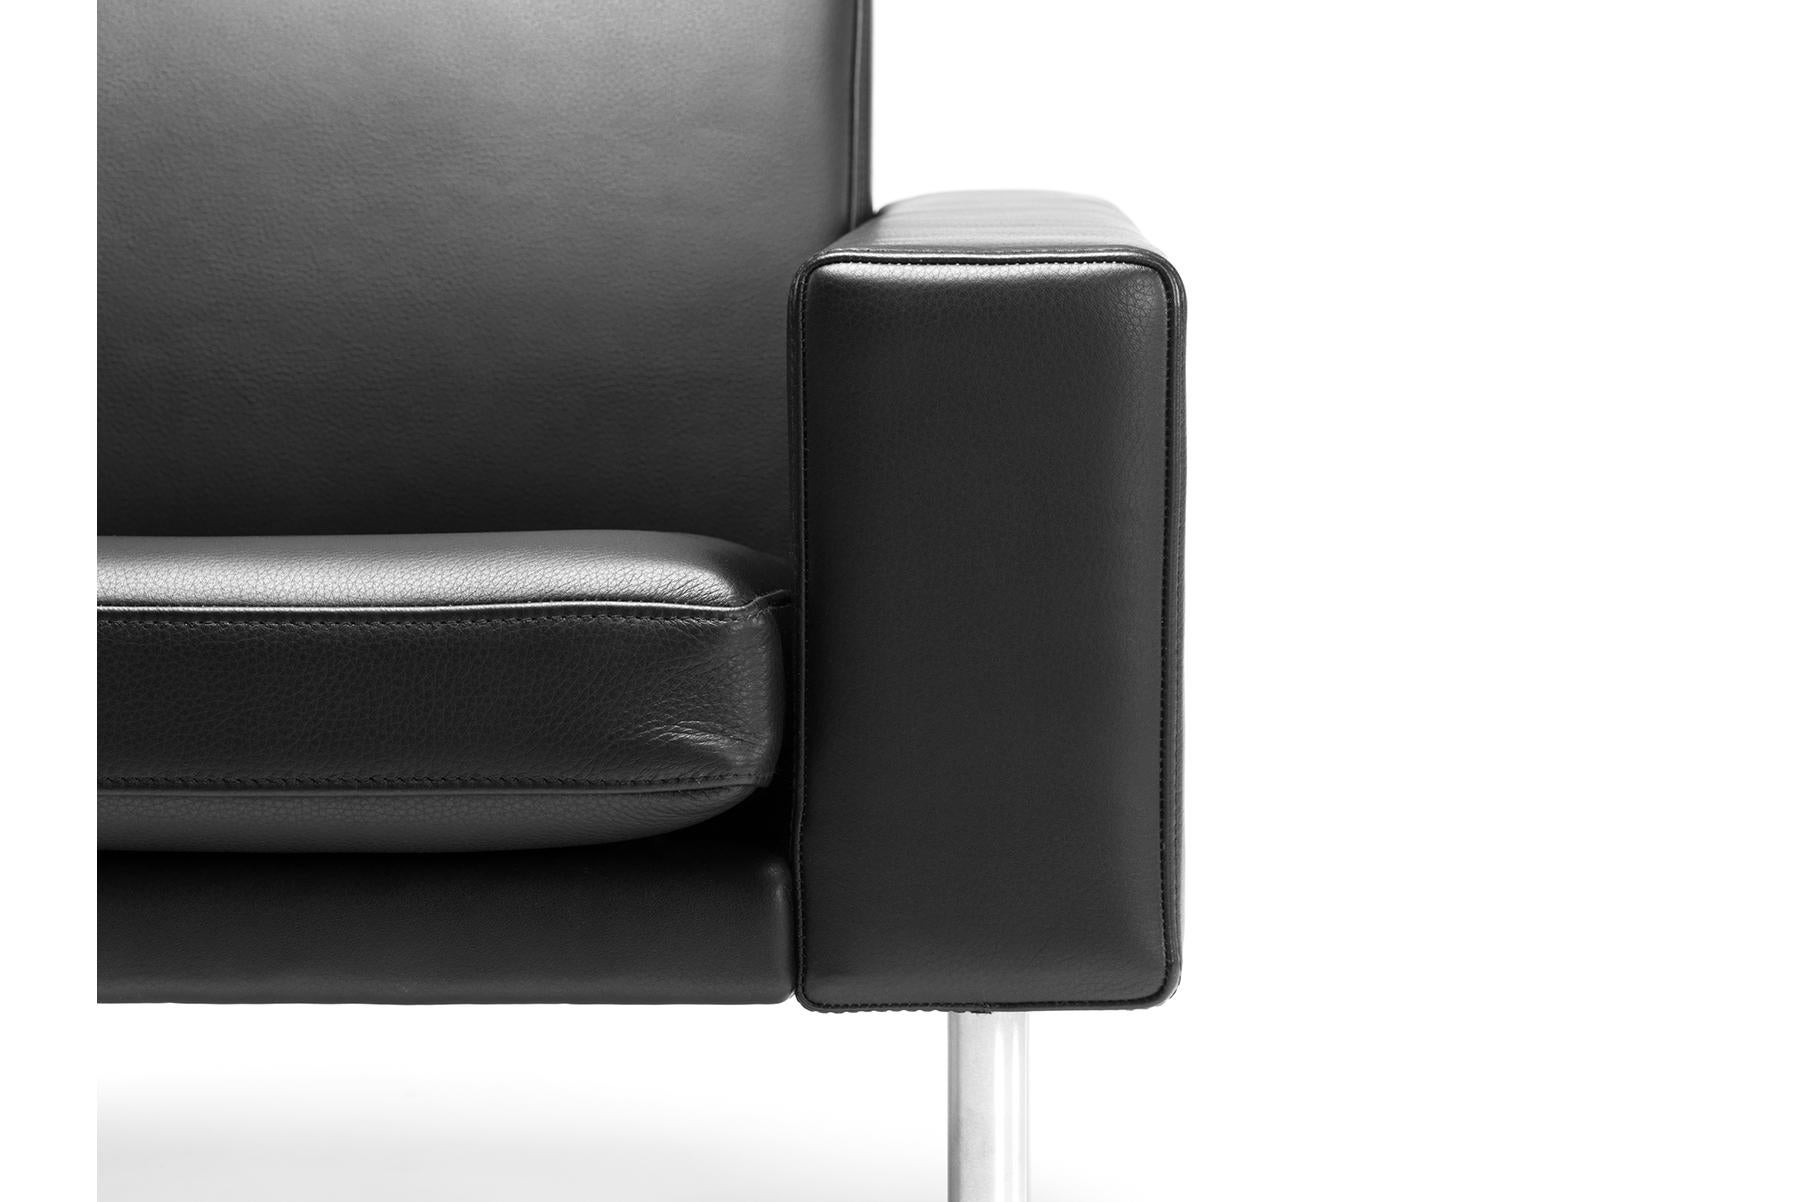 Conçu par Hans Wegner pour GETAMA en 1955, le fauteuil de salon 240 se caractérise par un savoir-faire et une ergonomie inégalés. Les bras sculptés en forme de 